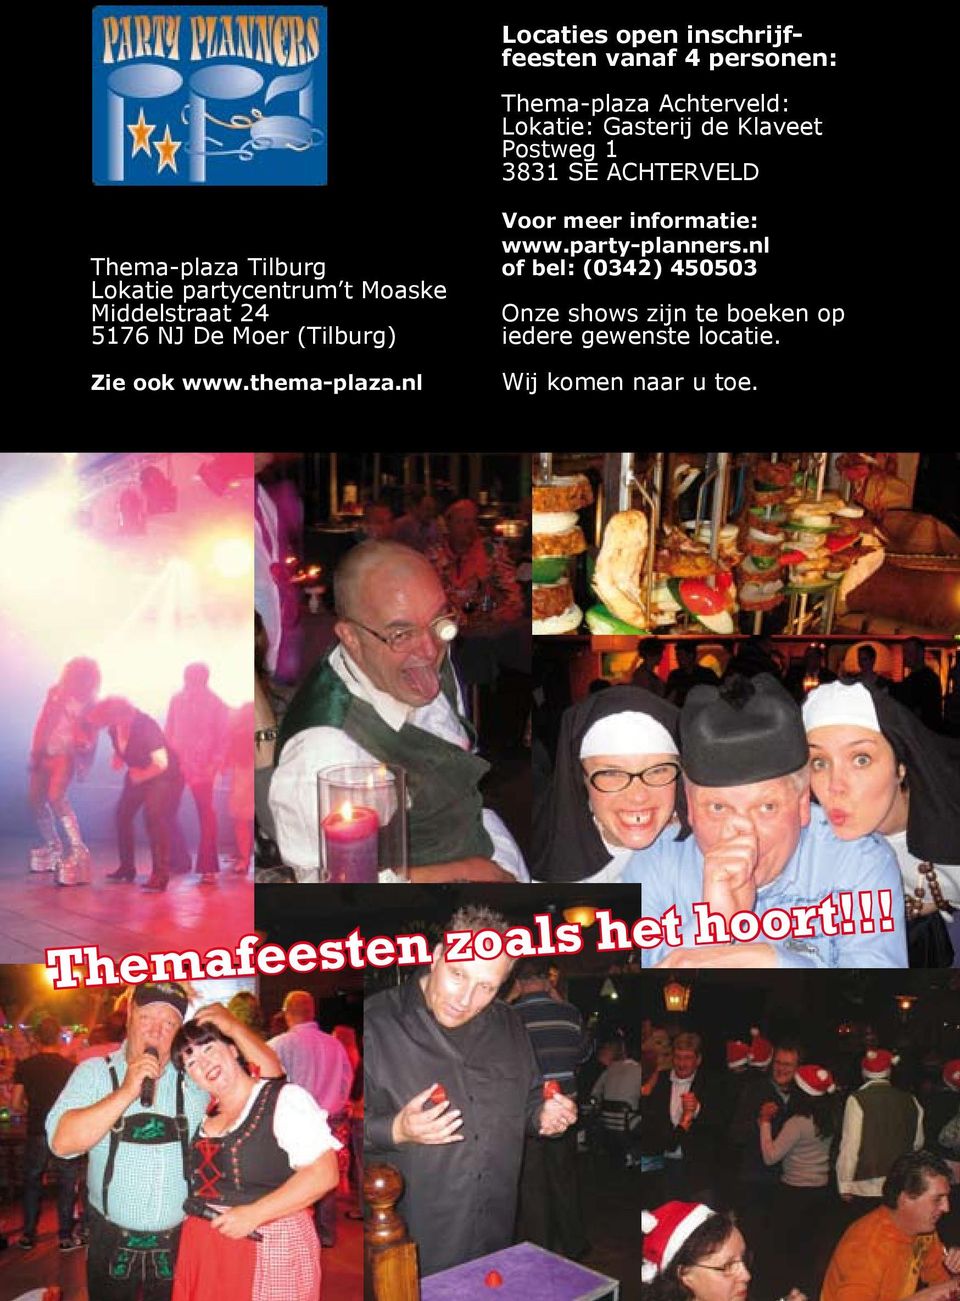 Moer (Tilburg) Zie ook www.thema-plaza.nl Voor meer informatie: www.party-planners.